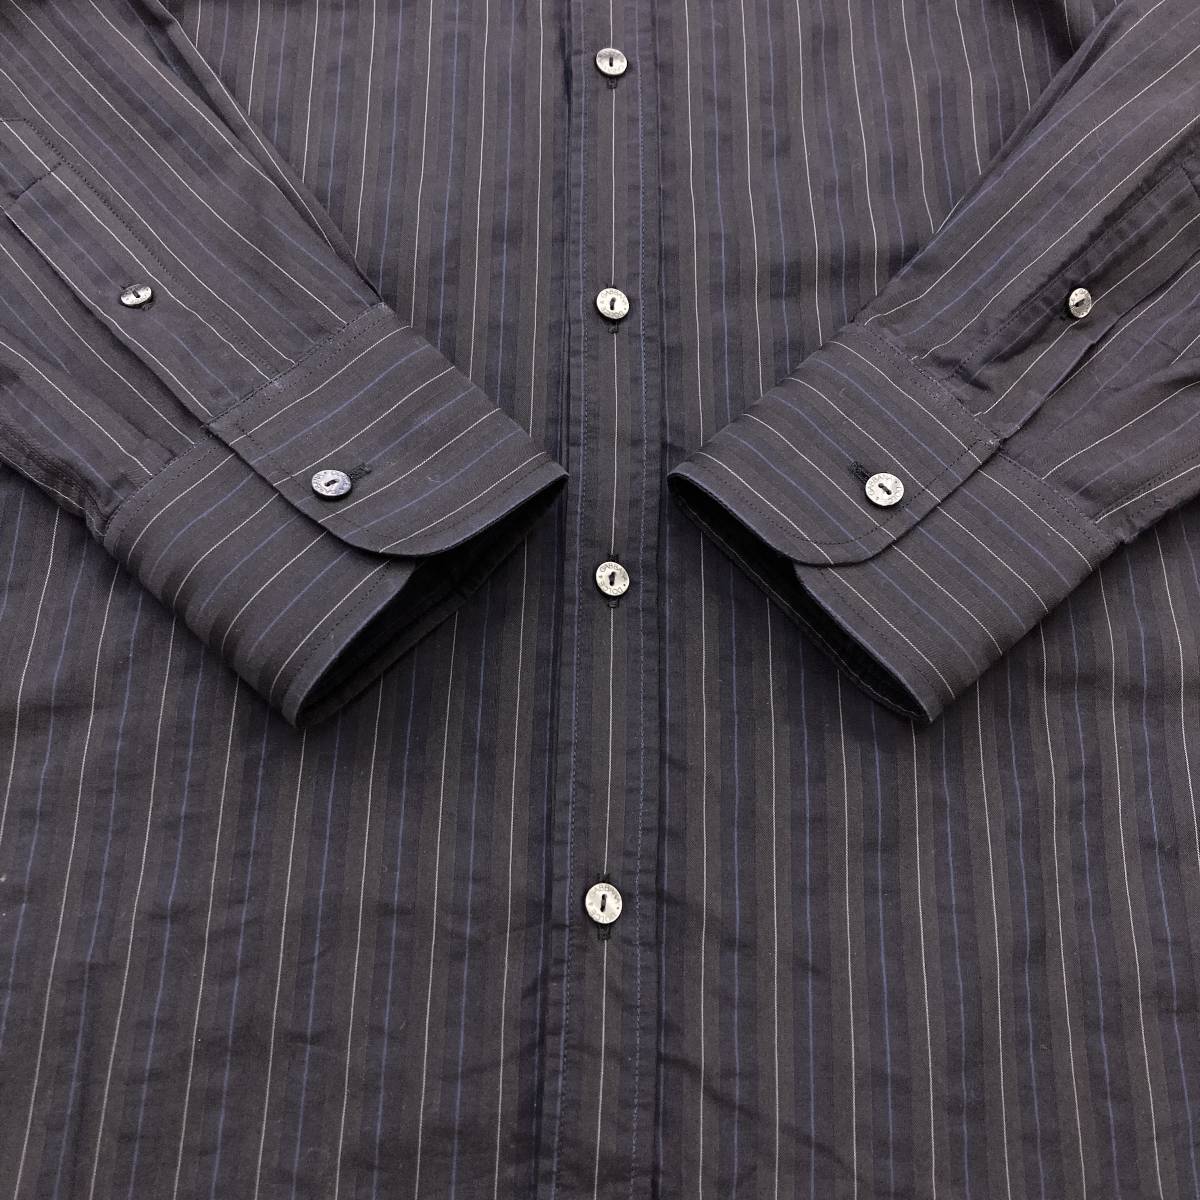 DOLCE&GABBANA GOLD stripe long sleeve shirt black Italy made men's 37 size Dolce & Gabbana Dolce&Gabbana D&G 3070055